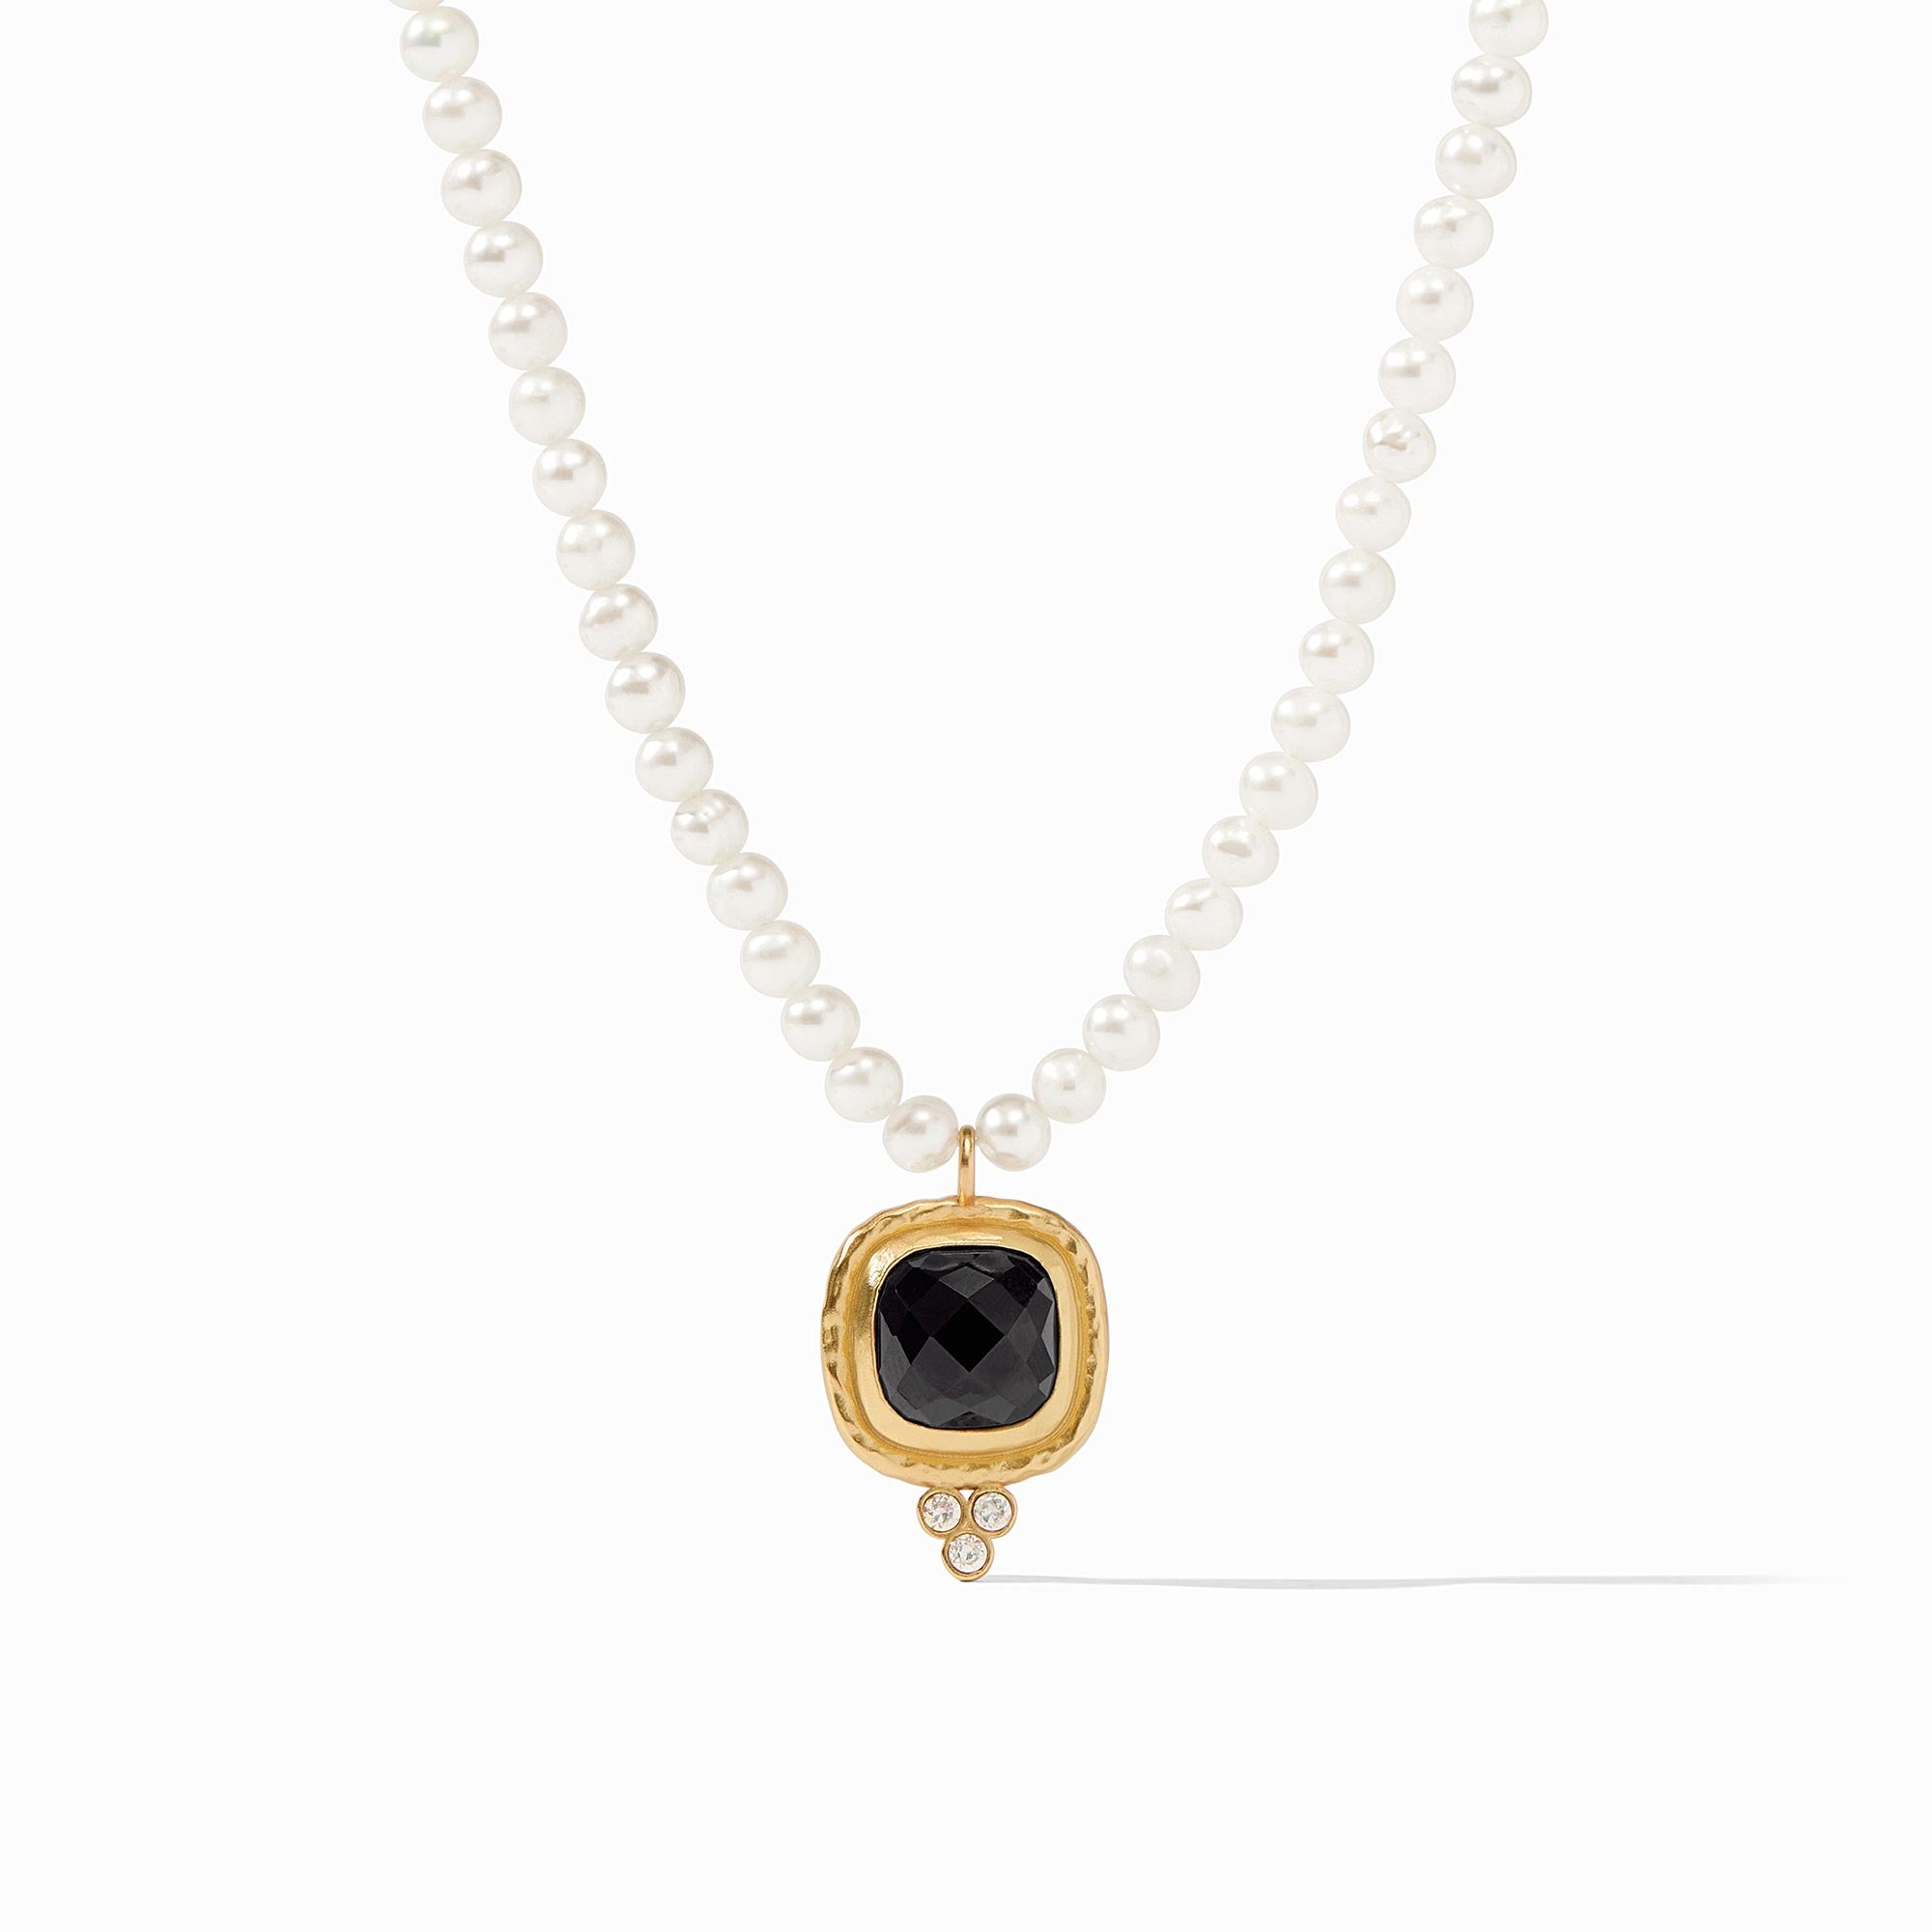 Julie Vos - Tudor Delicate Necklace, Obsidian Black